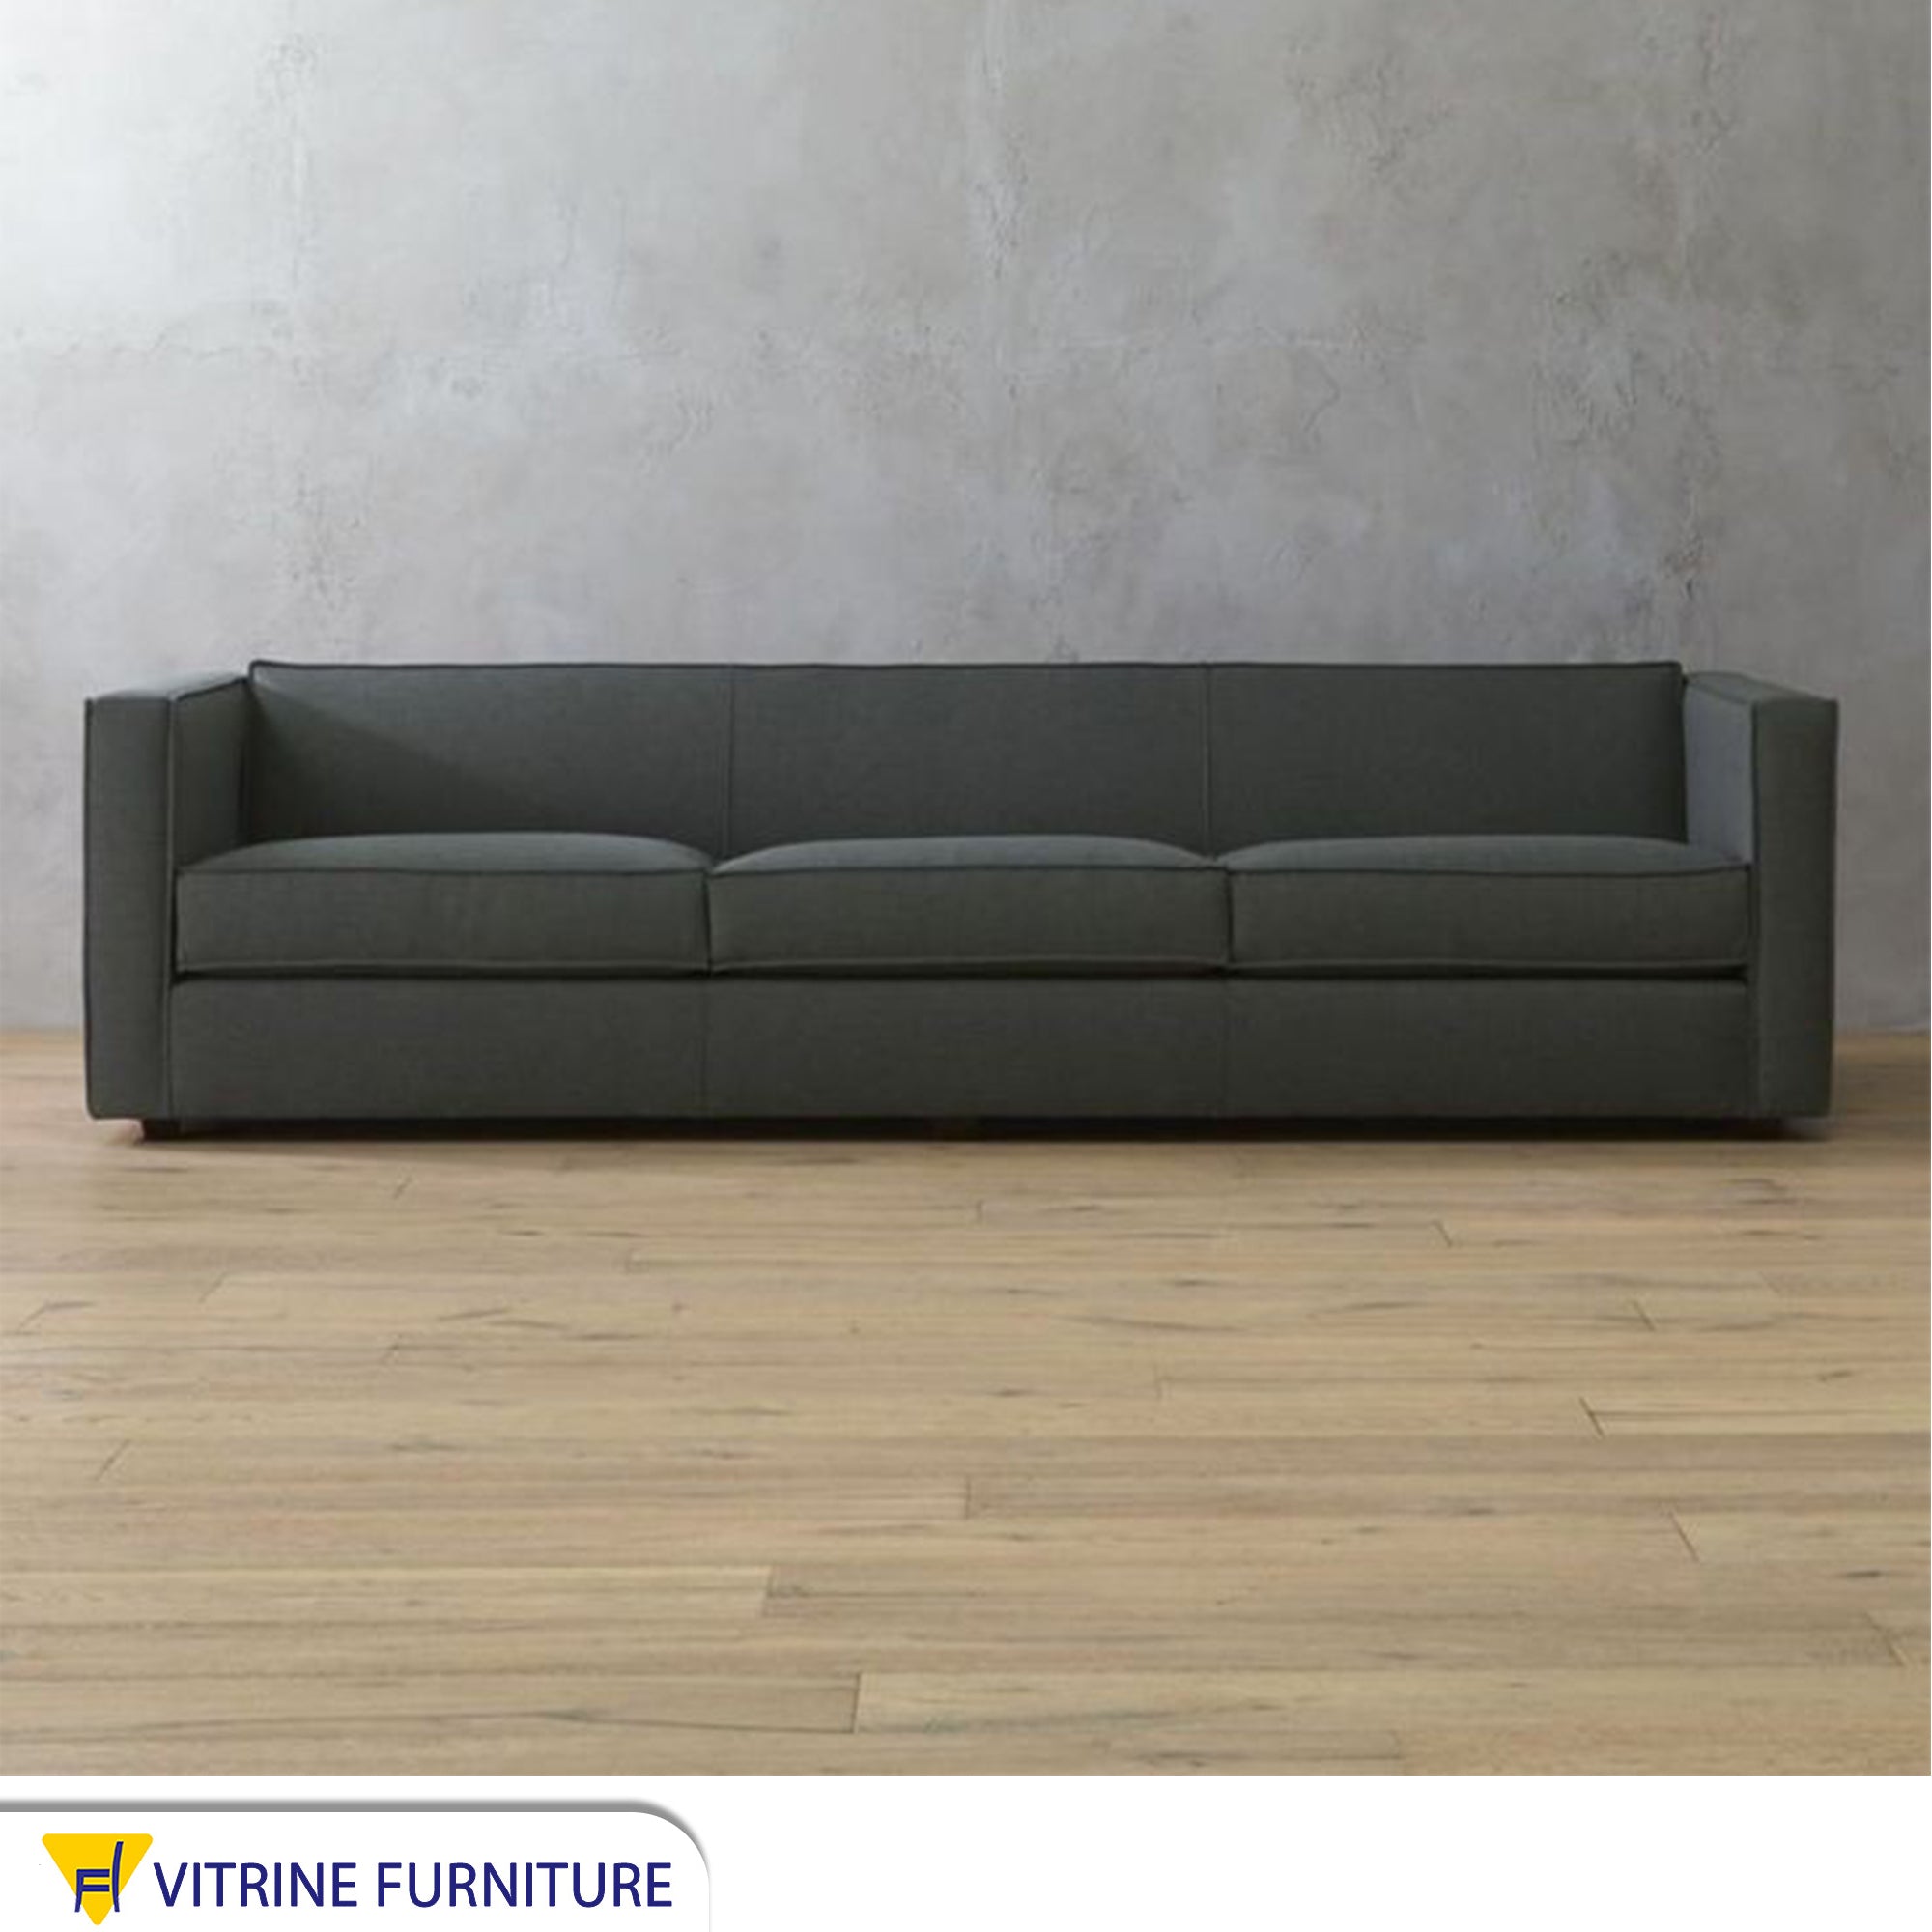 Triple sofa in gray color